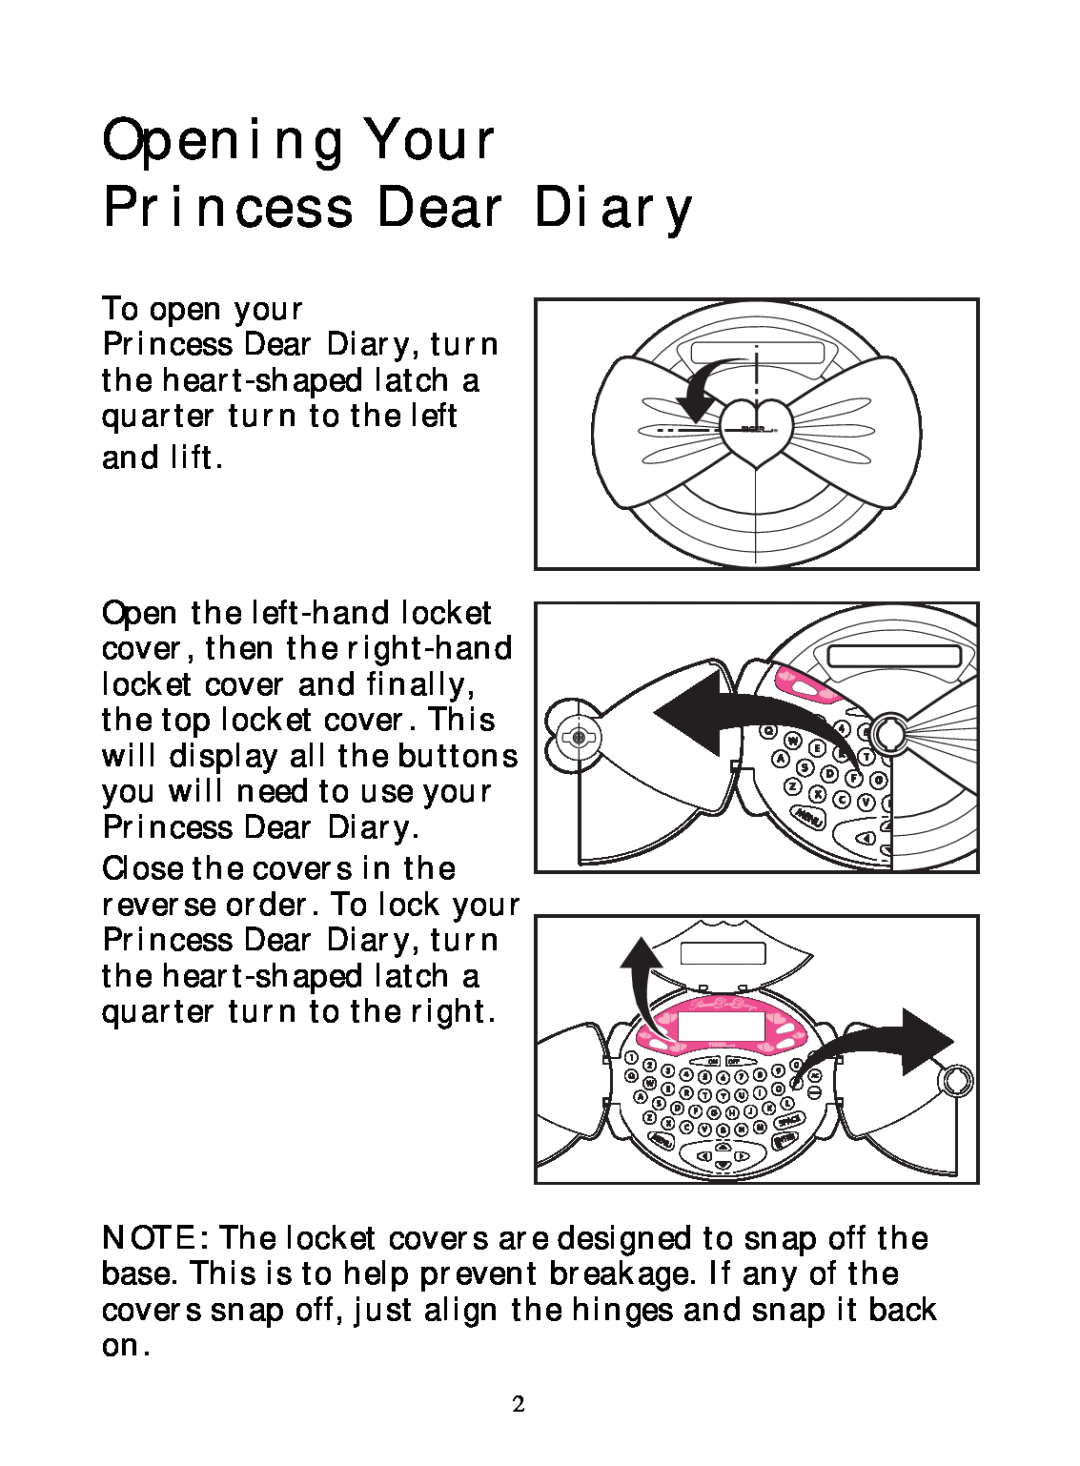 Hasbro 71-554 warranty Opening Your Princess Dear Diary 